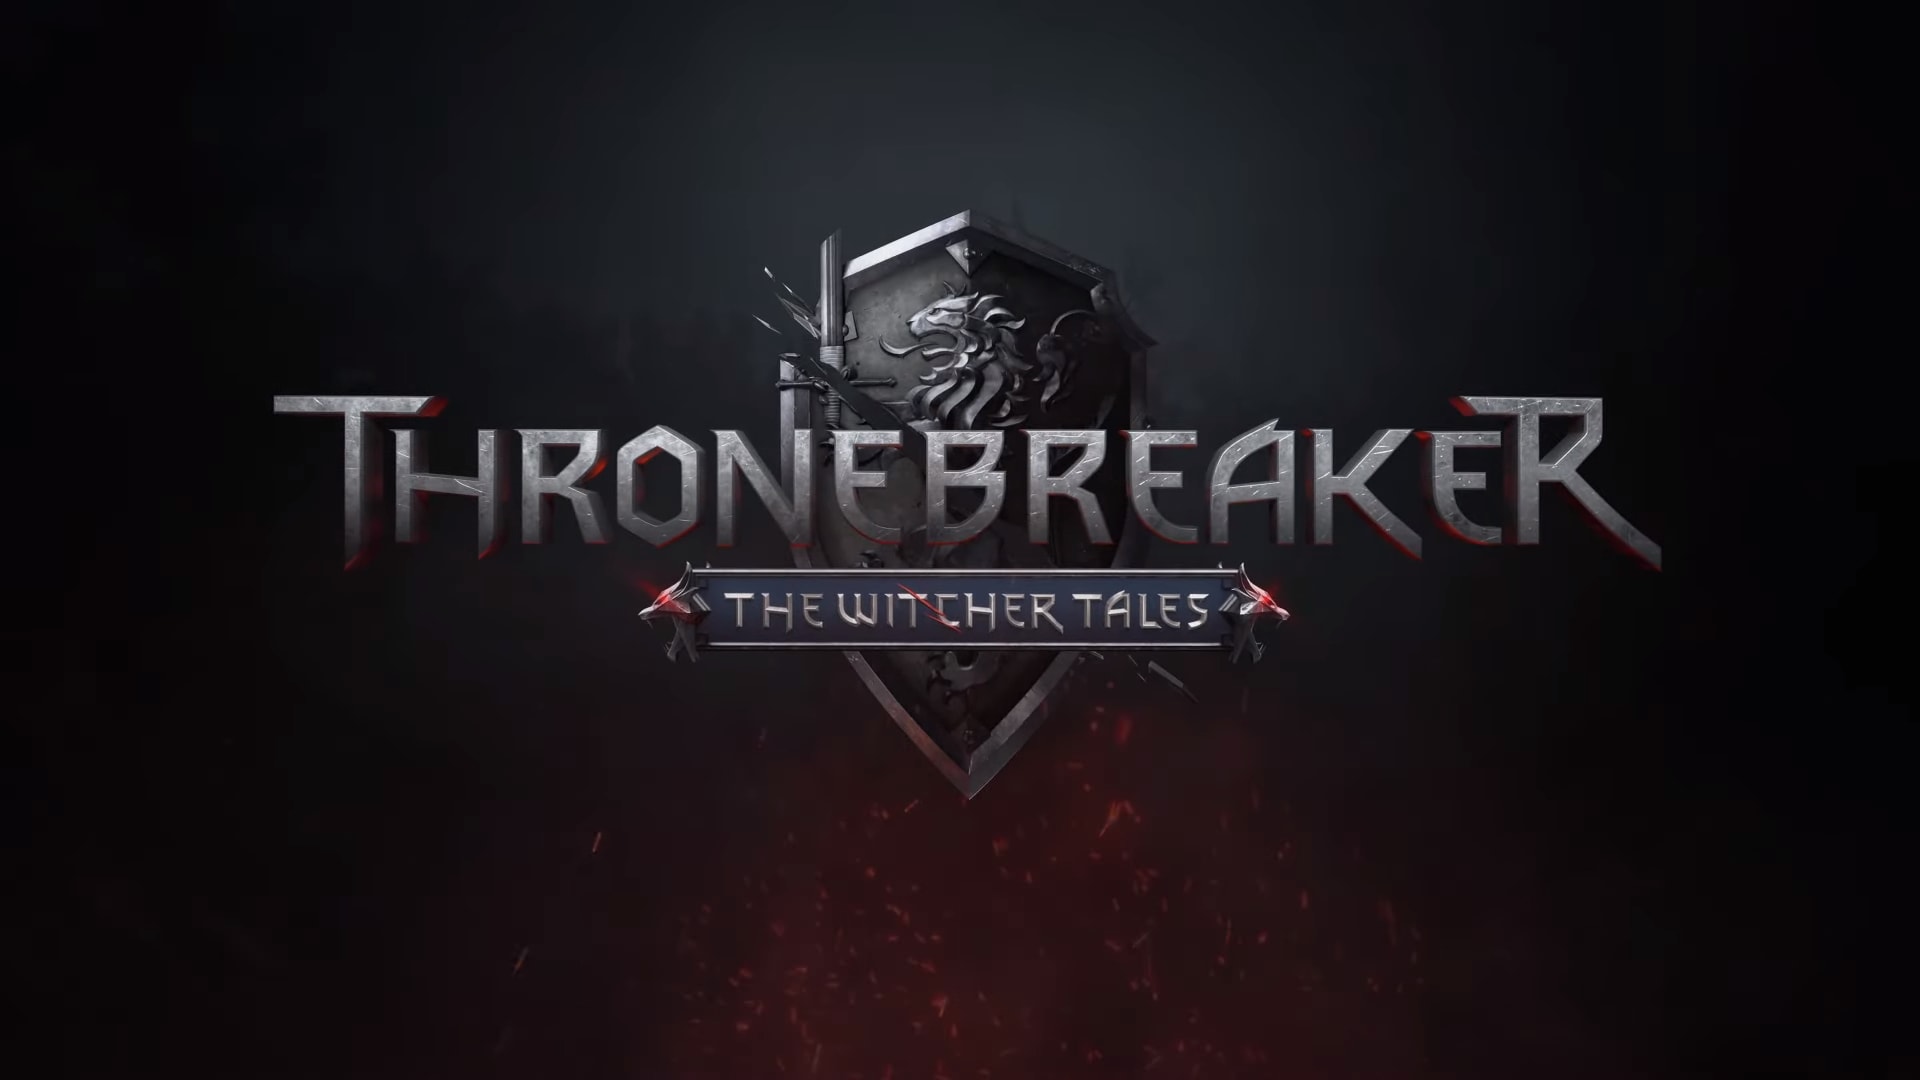 The Witcher Tales: Thronebreaker sbarcherà su Android. Ora sono aperte le pre-registrazioni (video)